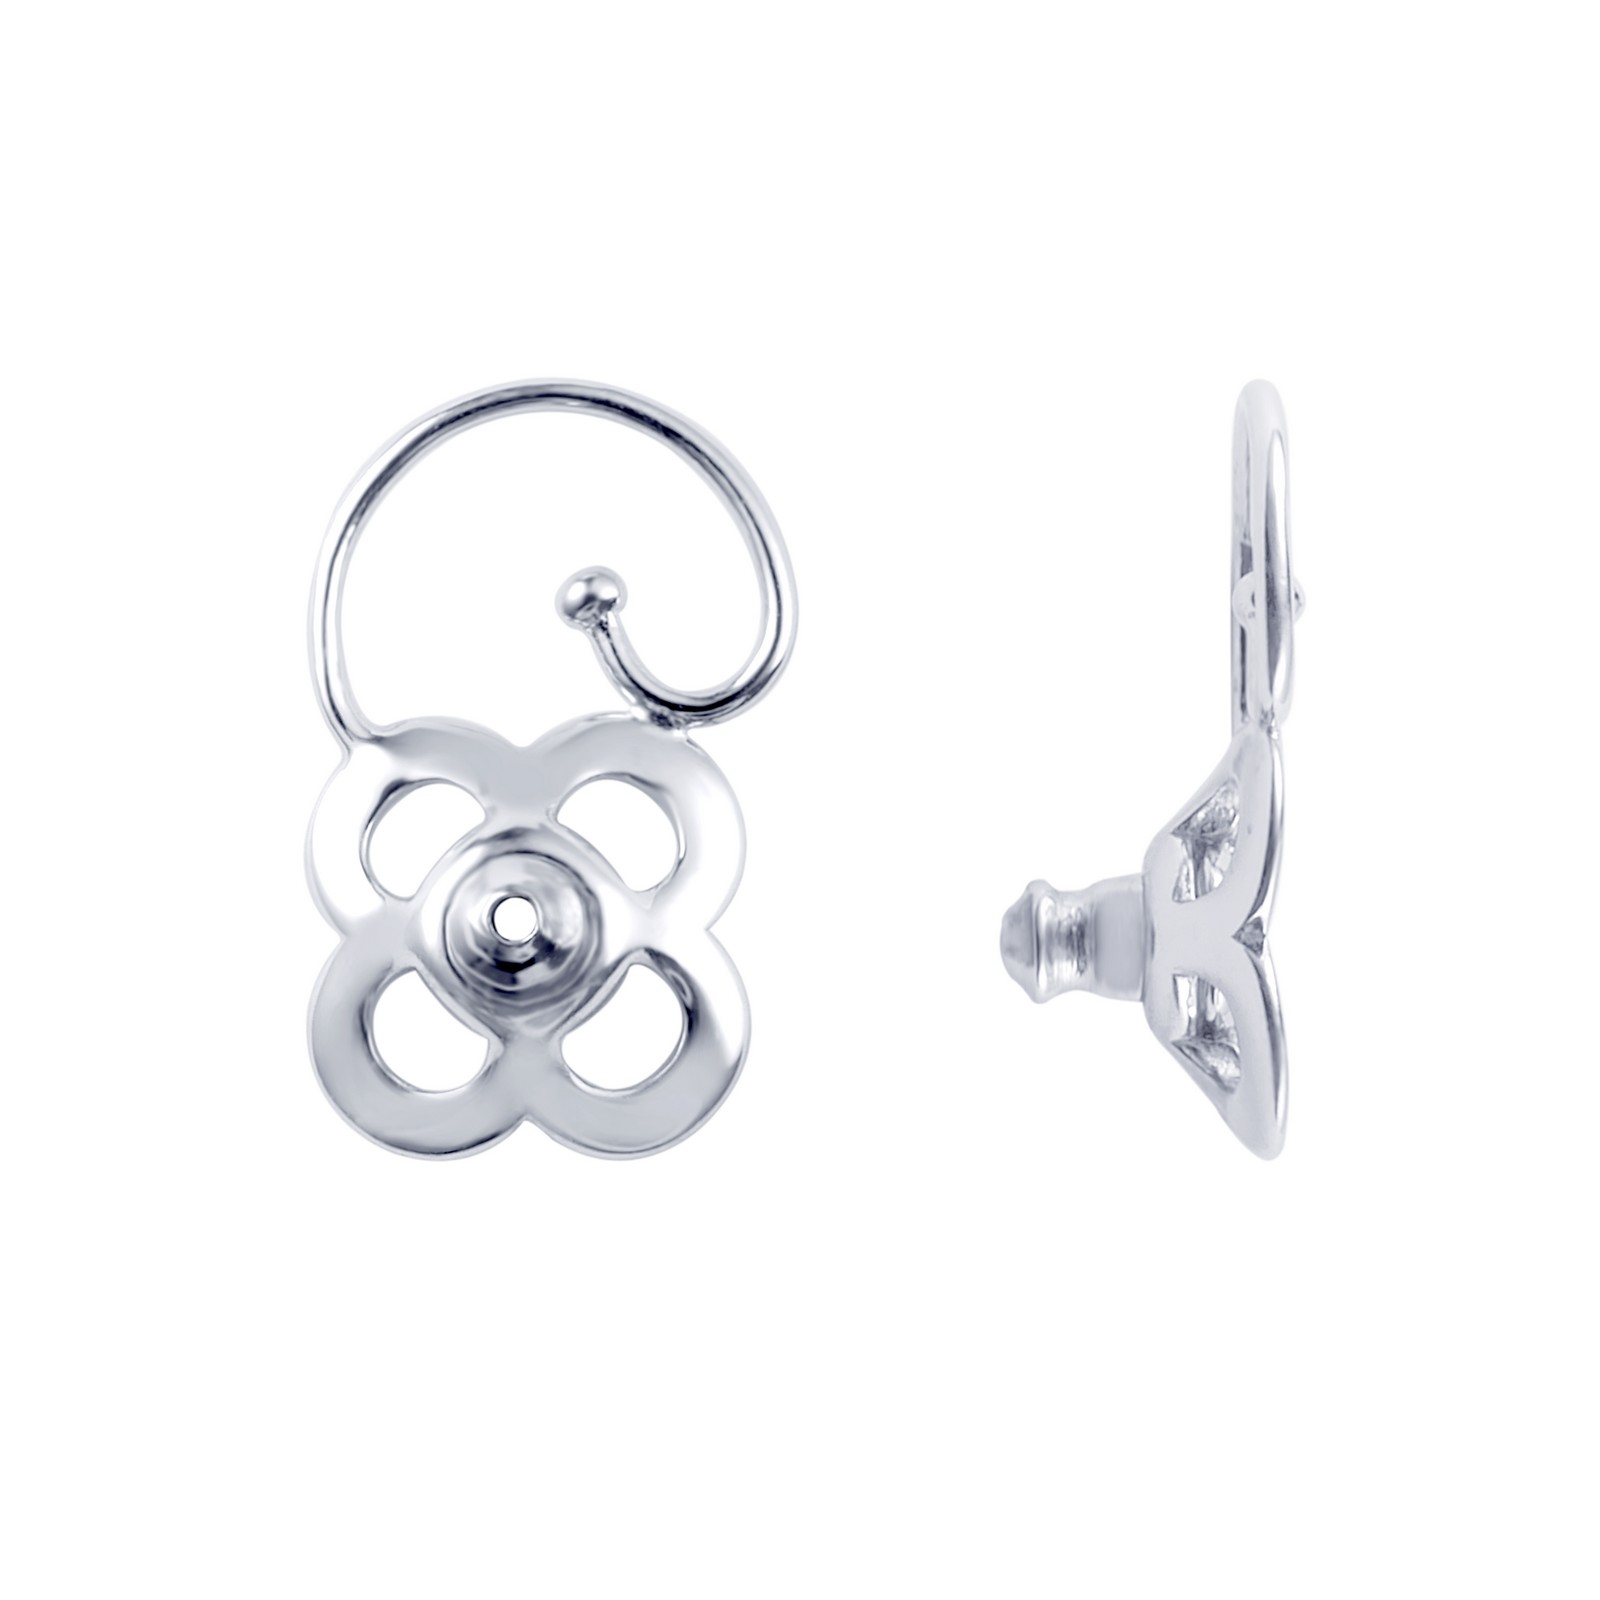 Lux-Clover Earring Backing Carroll / Ochs Jewelers Monroe, MI